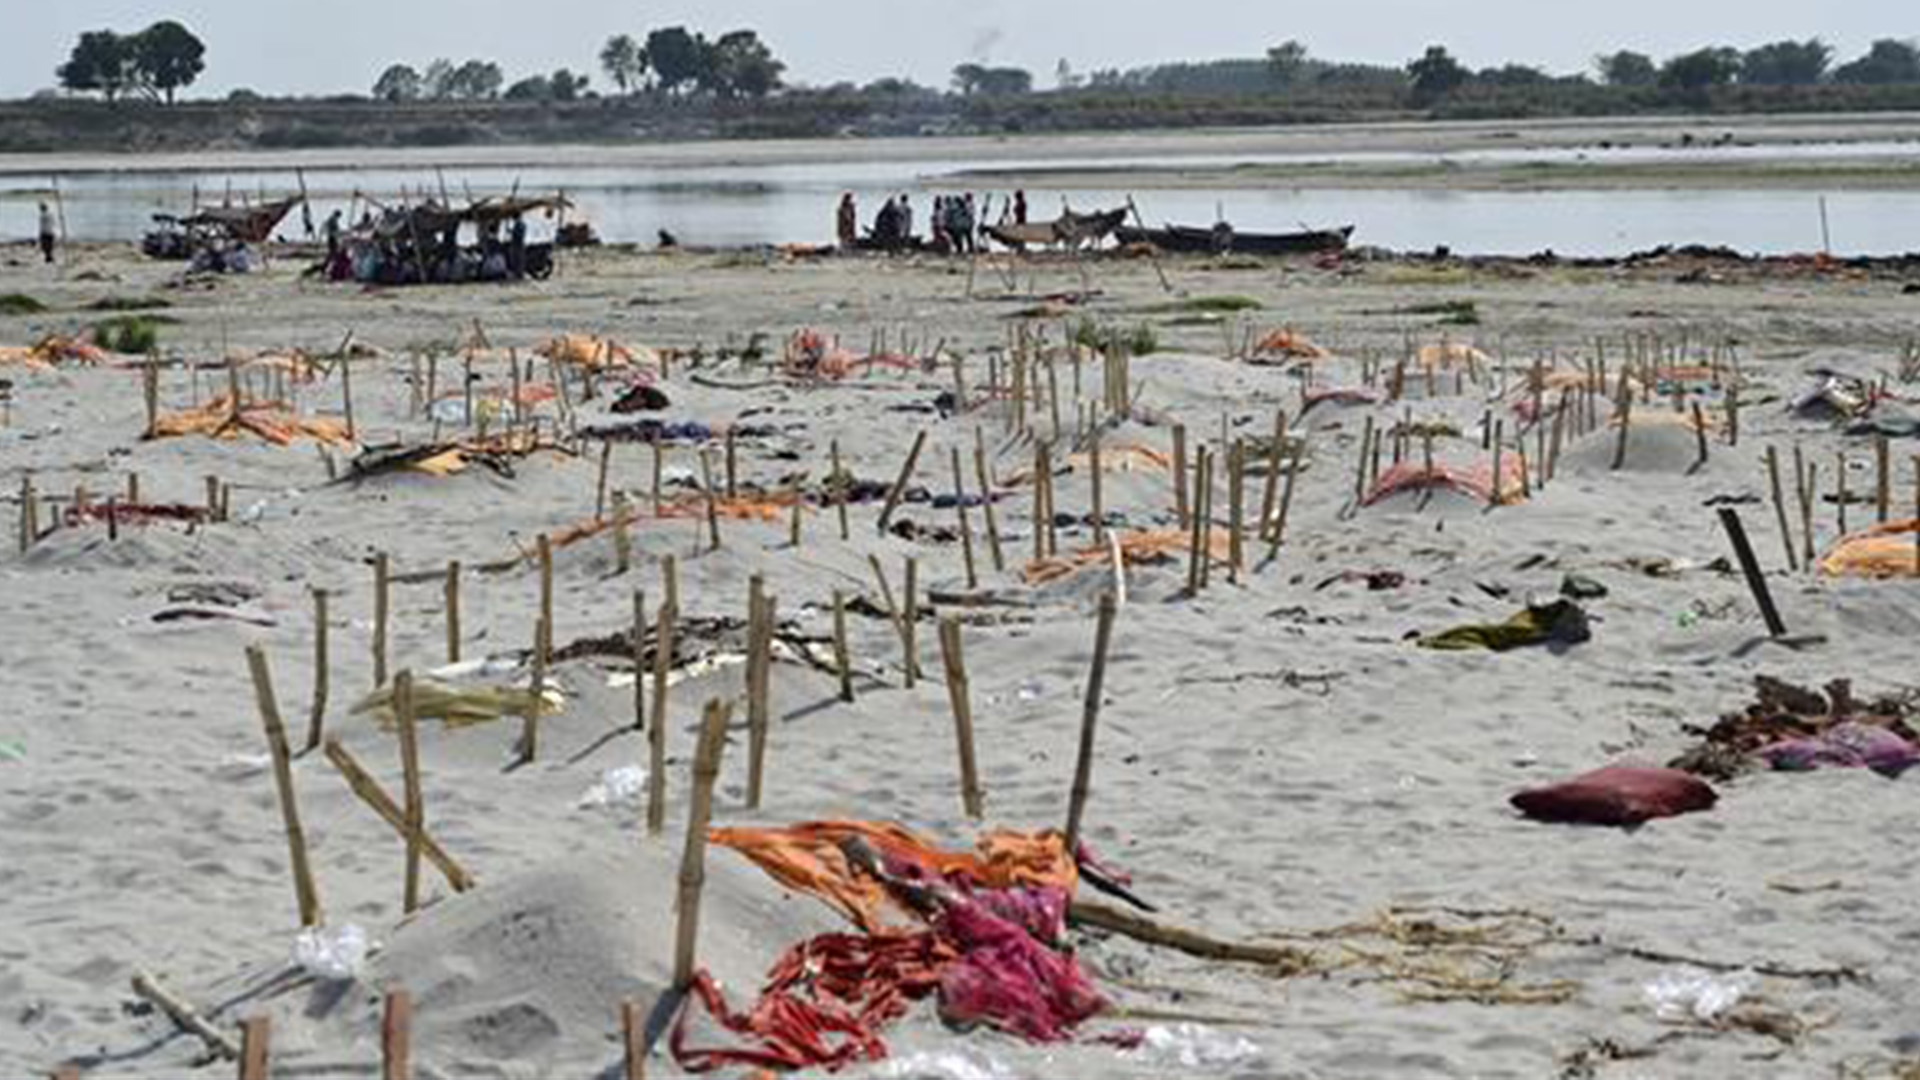 Lebih dari 2000 Mayat Dimakamkan, Sungai Gangga Jadi Lahan Kuburan Korban Covid-19